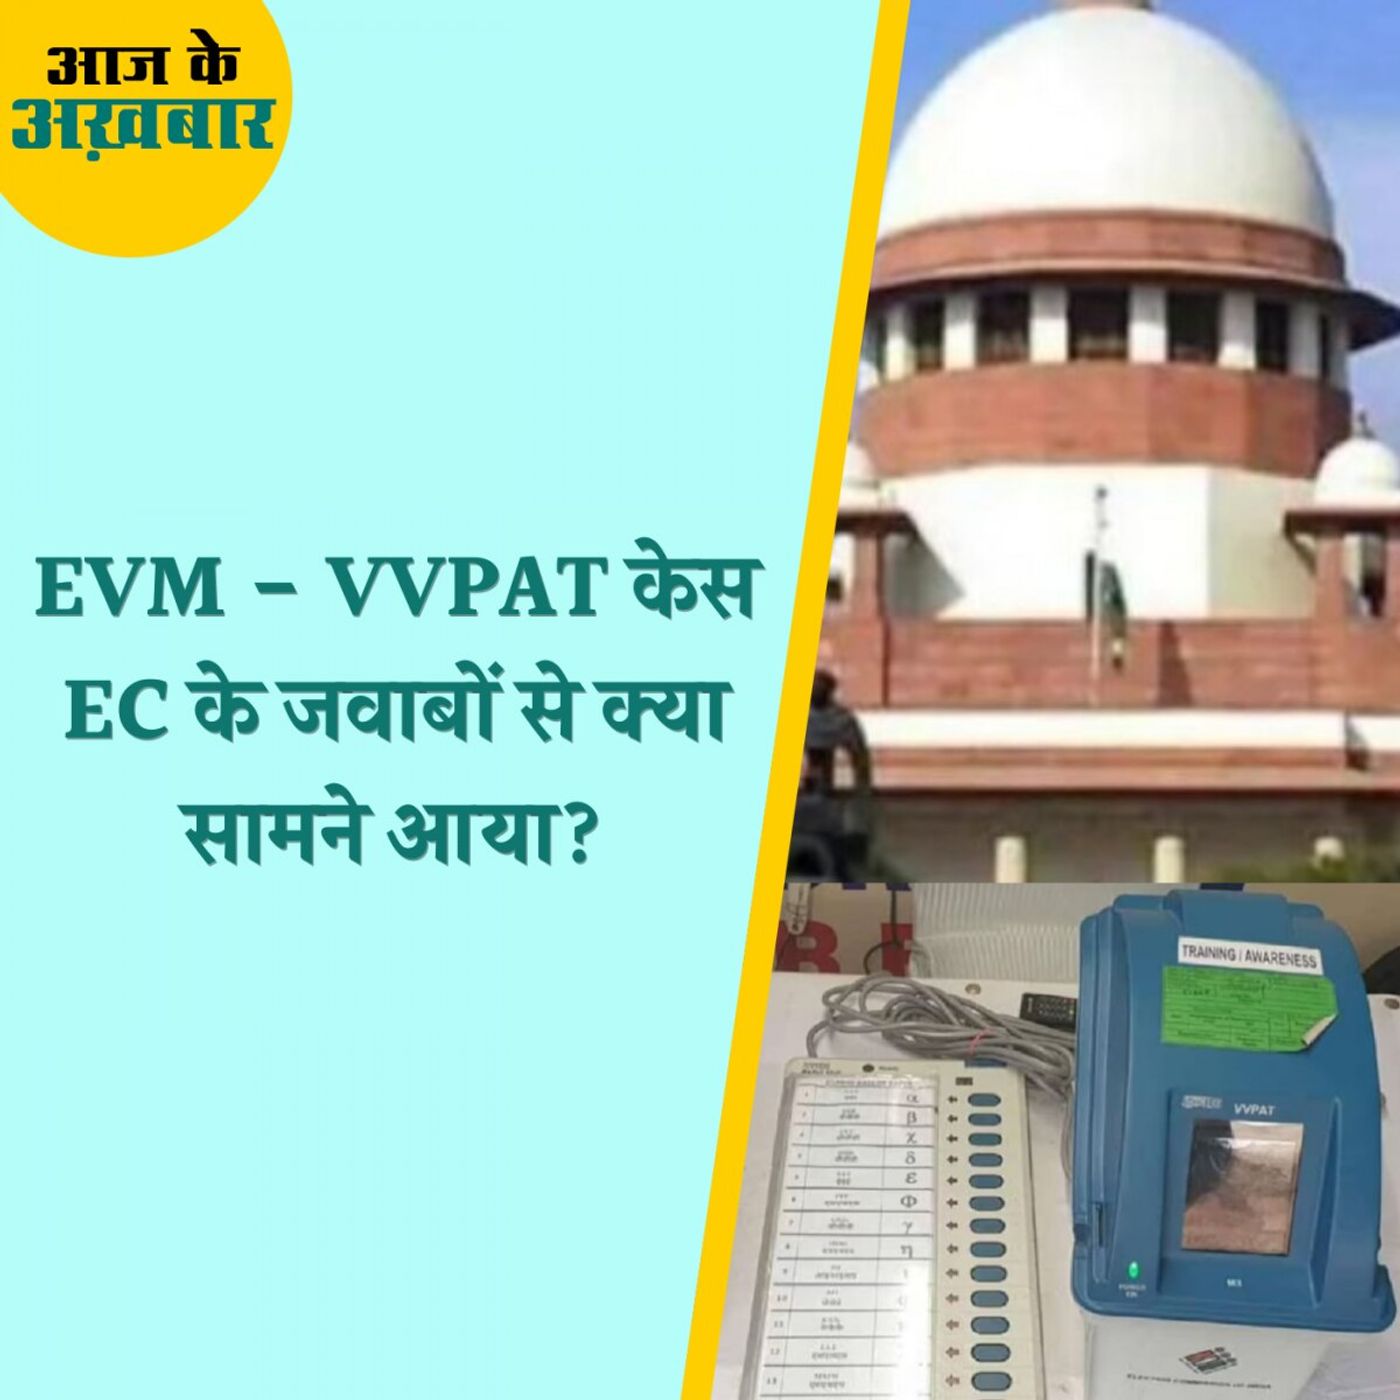 EVM - VVPAT मामले में कोर्ट ने EC से क्या सवाल - जवाब किए?: आज के अखबार, 25 अप्रैल